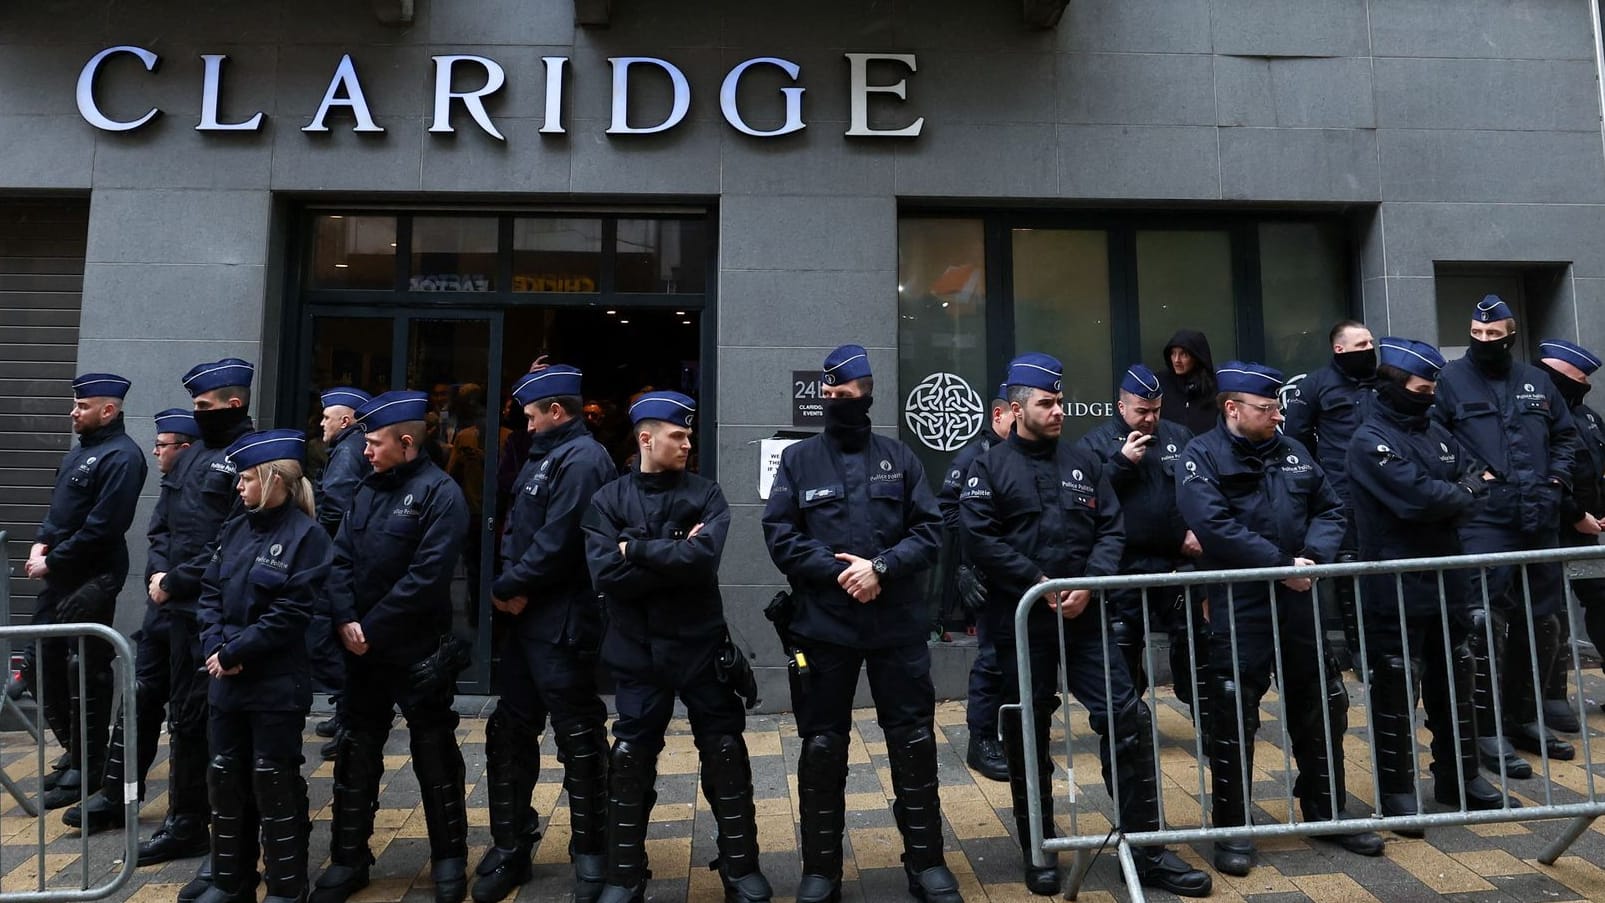 Brüssel: Polizei blockiert Konferenz von Rechten – auch Maaßen erwartet